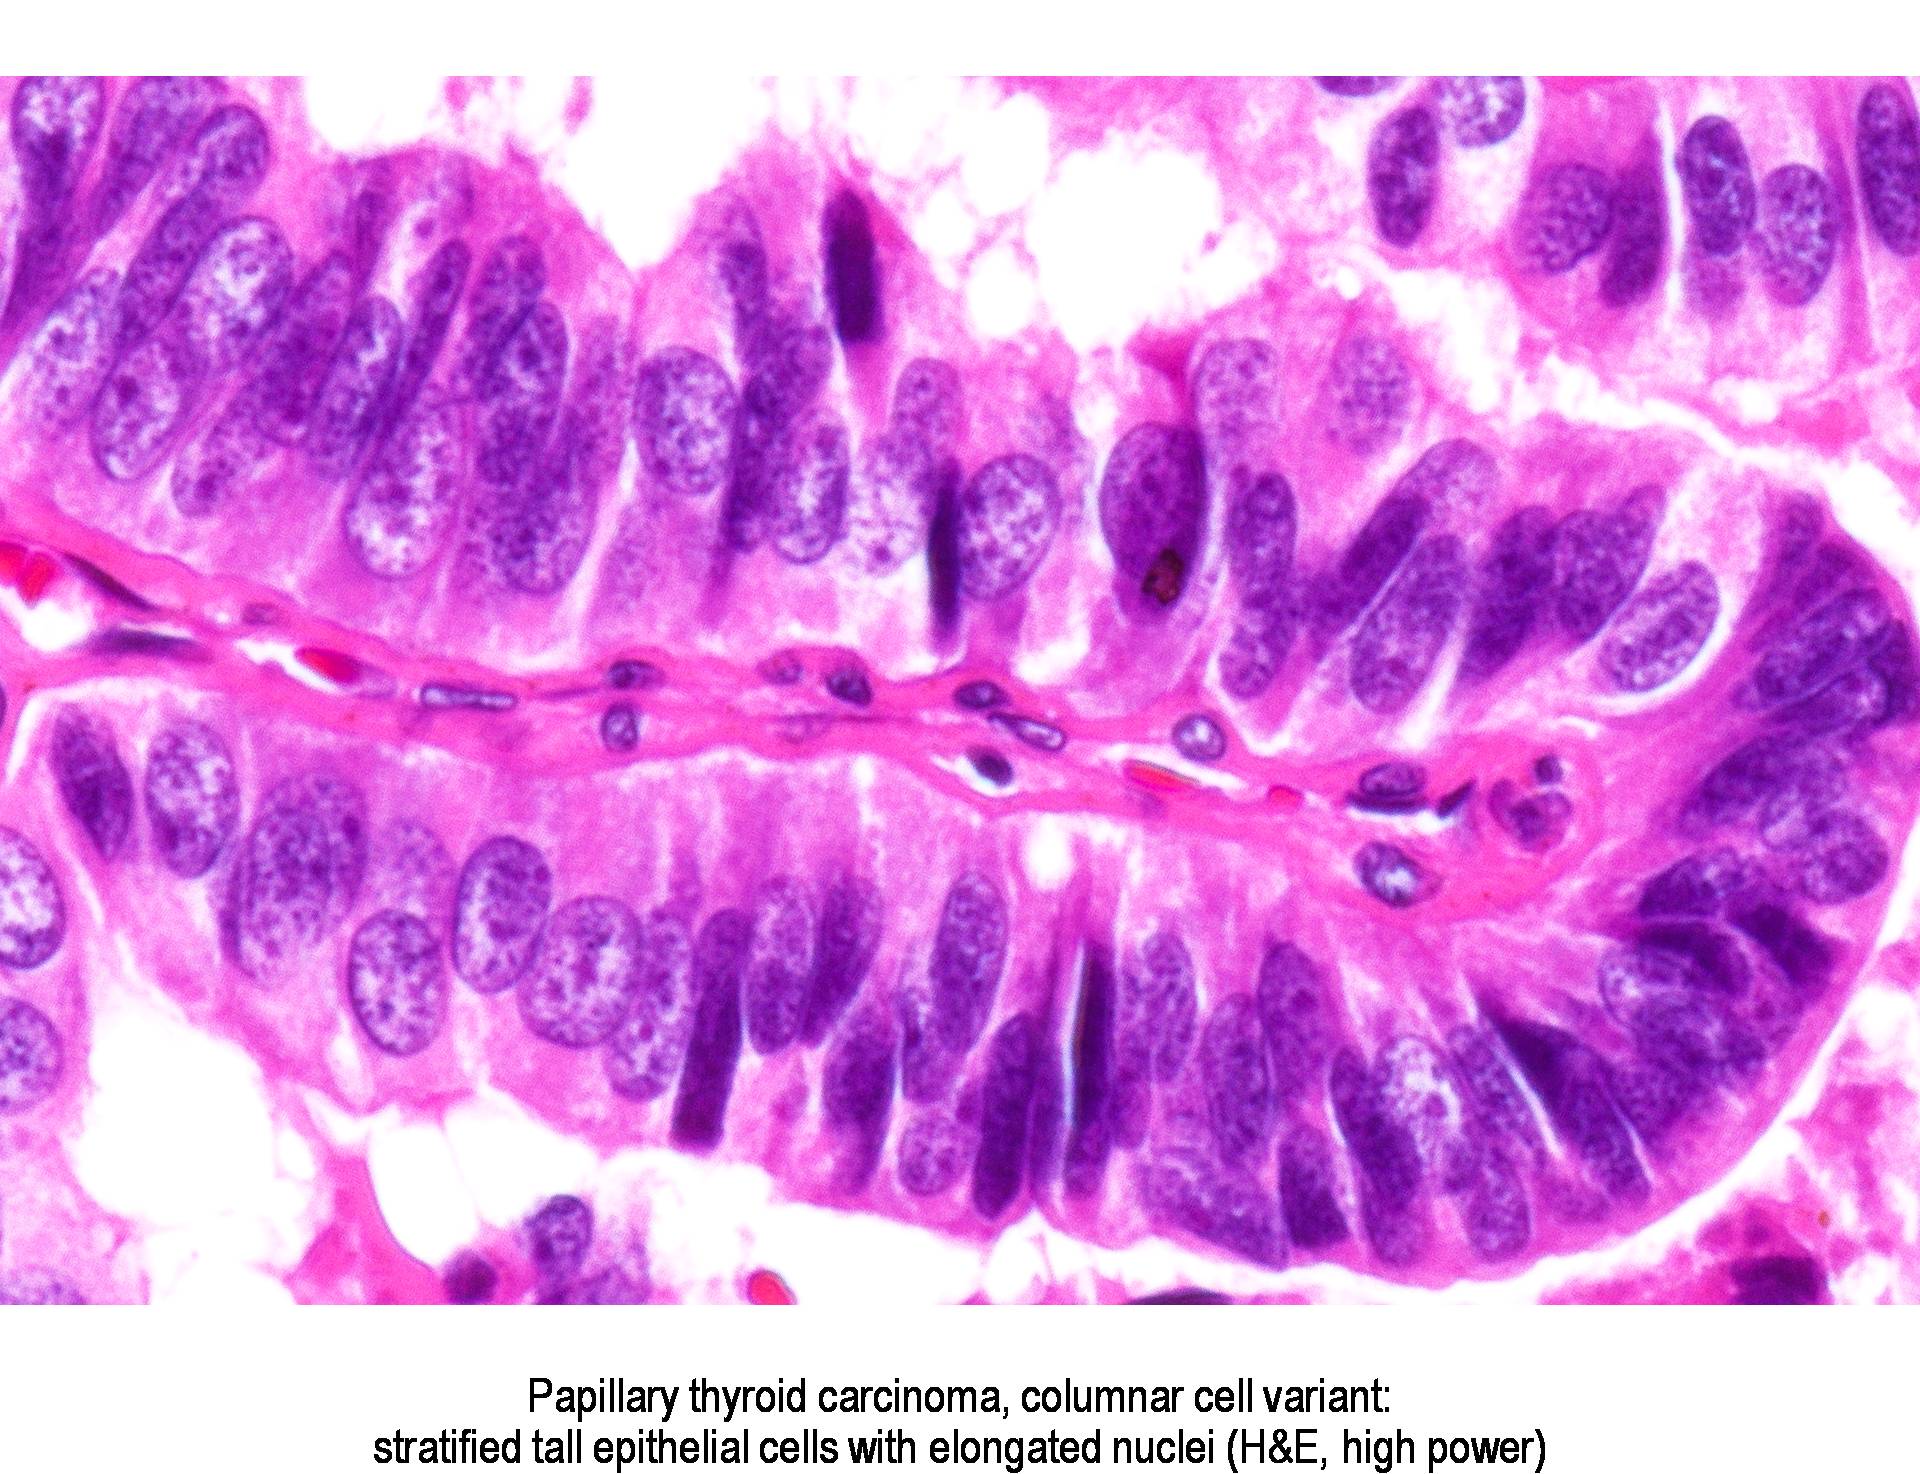 Pathology Outlines - Columnar cell variant